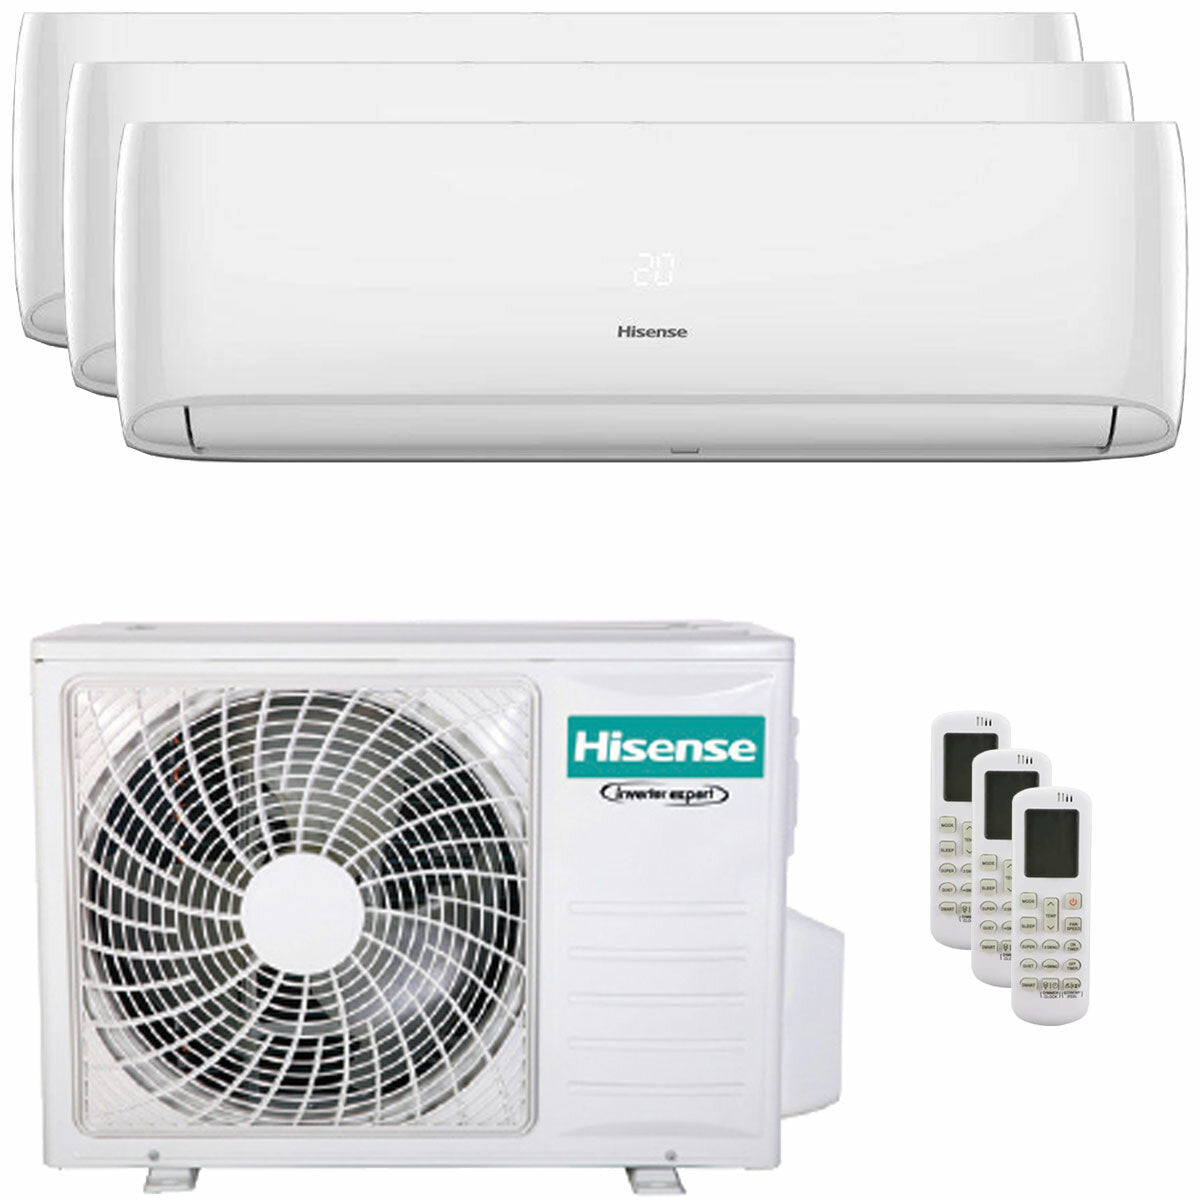 Hisense Hi-Comfort trial climatiseur split 7000+7000+9000 BTU onduleur A++ wifi unité extérieure 5,5 kW